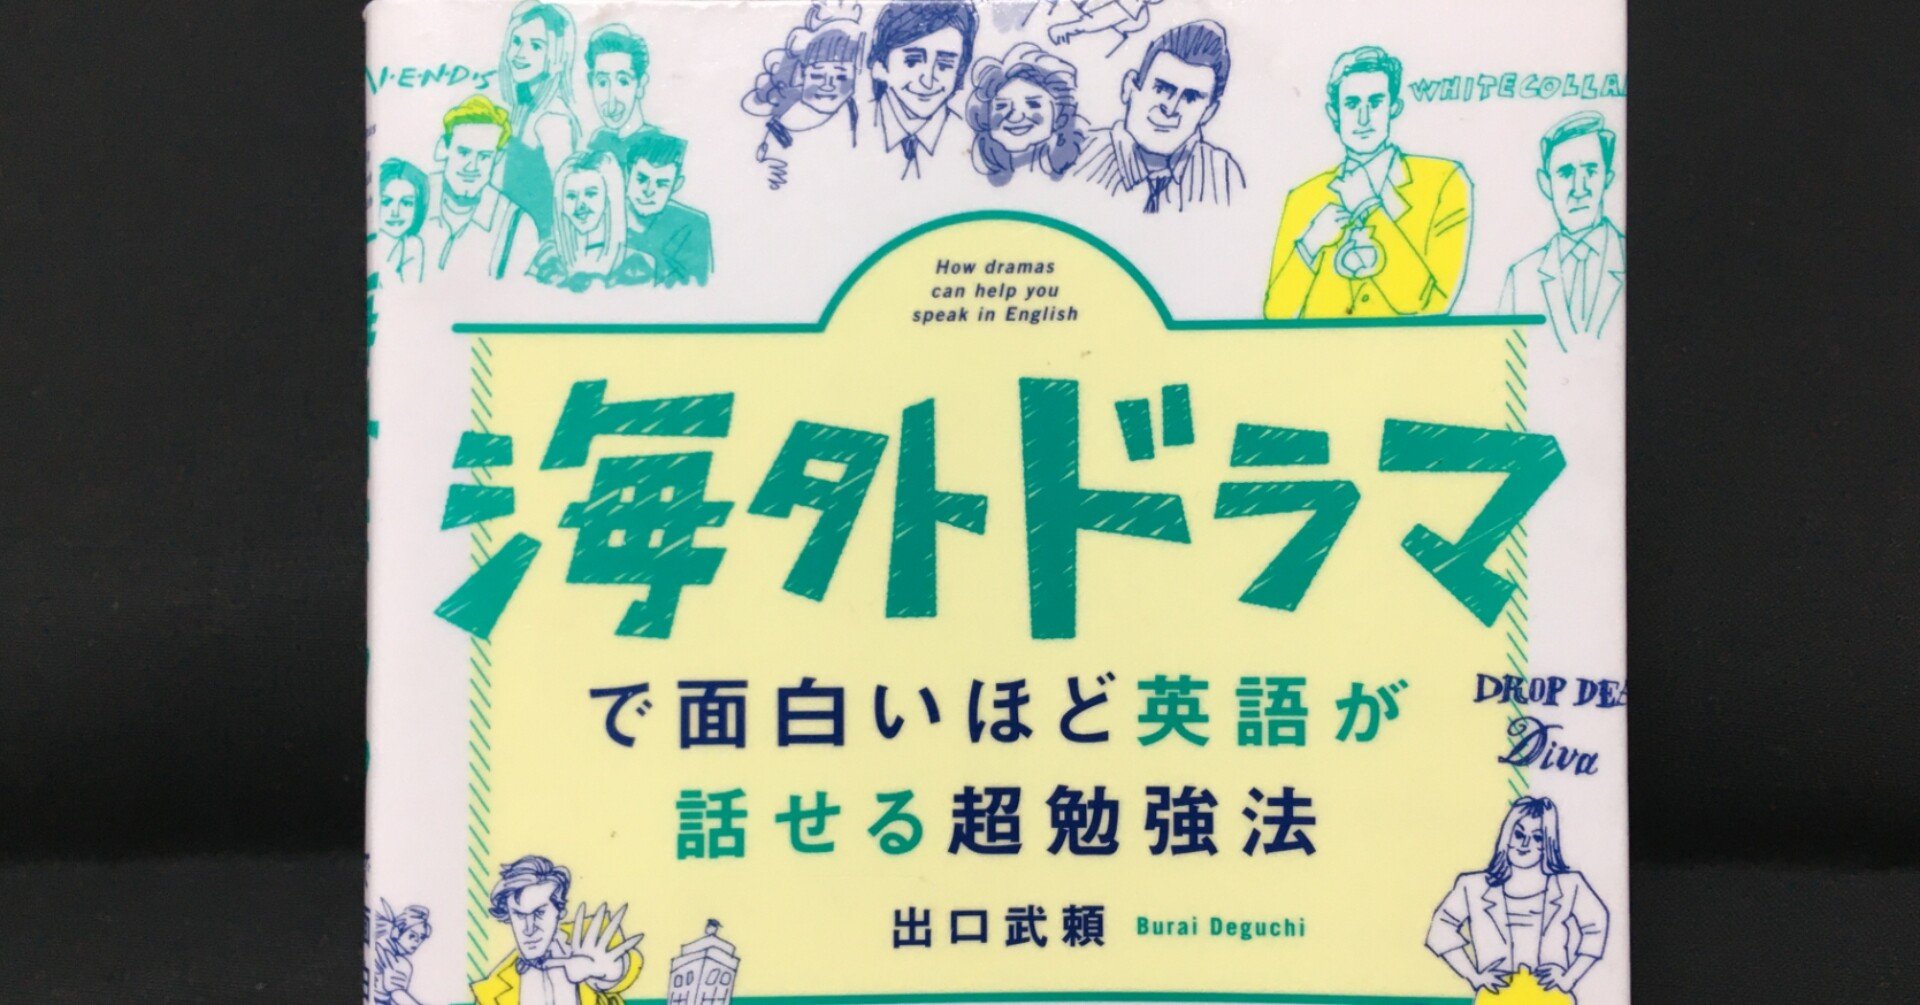 毎日読書感想文海外ドラマで面白いほど英語が話せる超勉強法 21 05 05 Vol287 Hakatamax Note